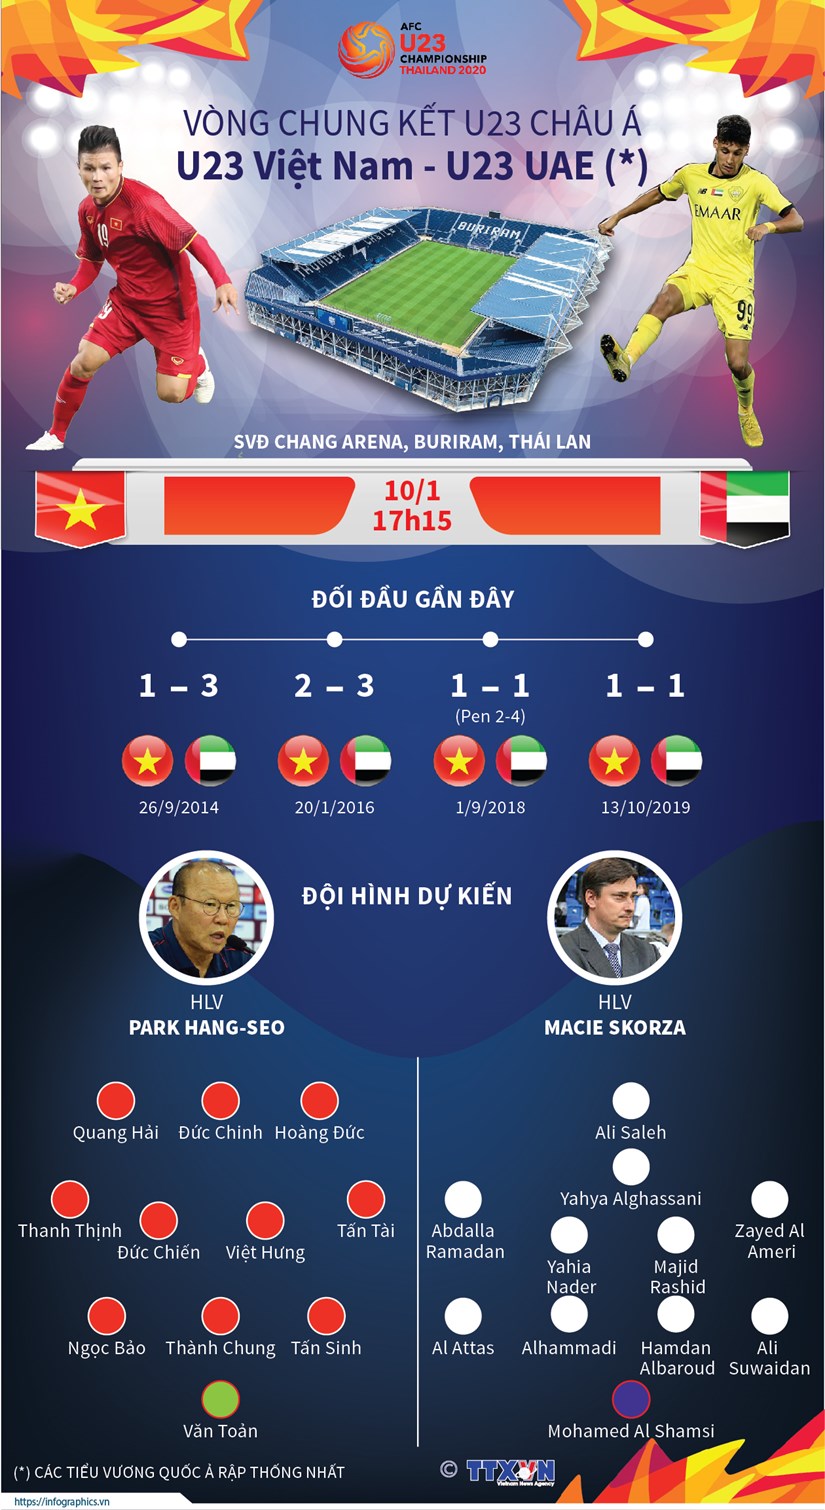 Vòng chung kết U23 châu Á giữa đội tuyển U23 Việt Nam và U23 UAE diễn ra tại Thái Lan vào ngày 10/1/2020./.  (TTXVN/Vietnam+